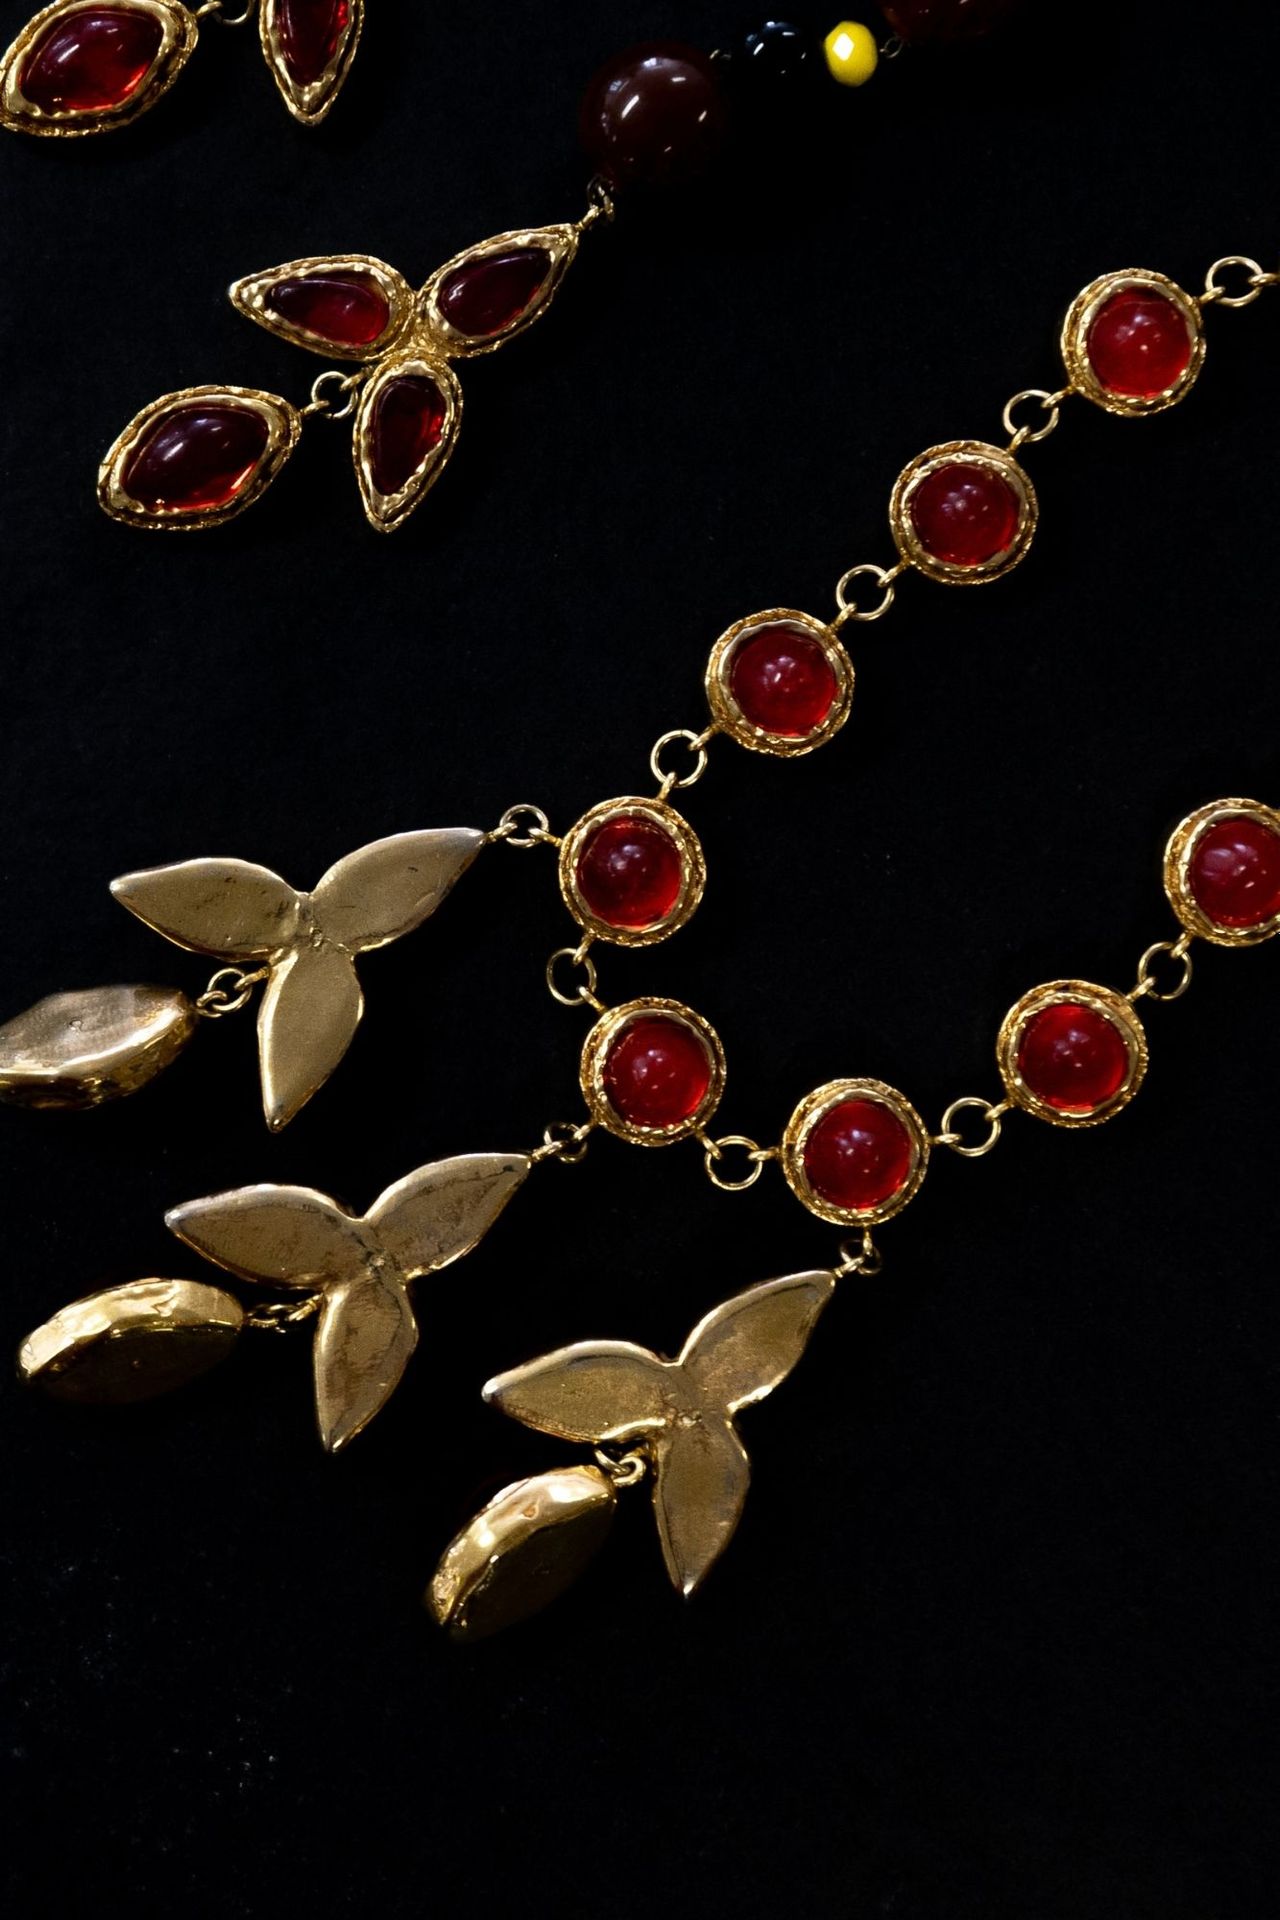 PARURE COUTURE Gioiello d'alta moda in resina dorata e perline di resina rossa.